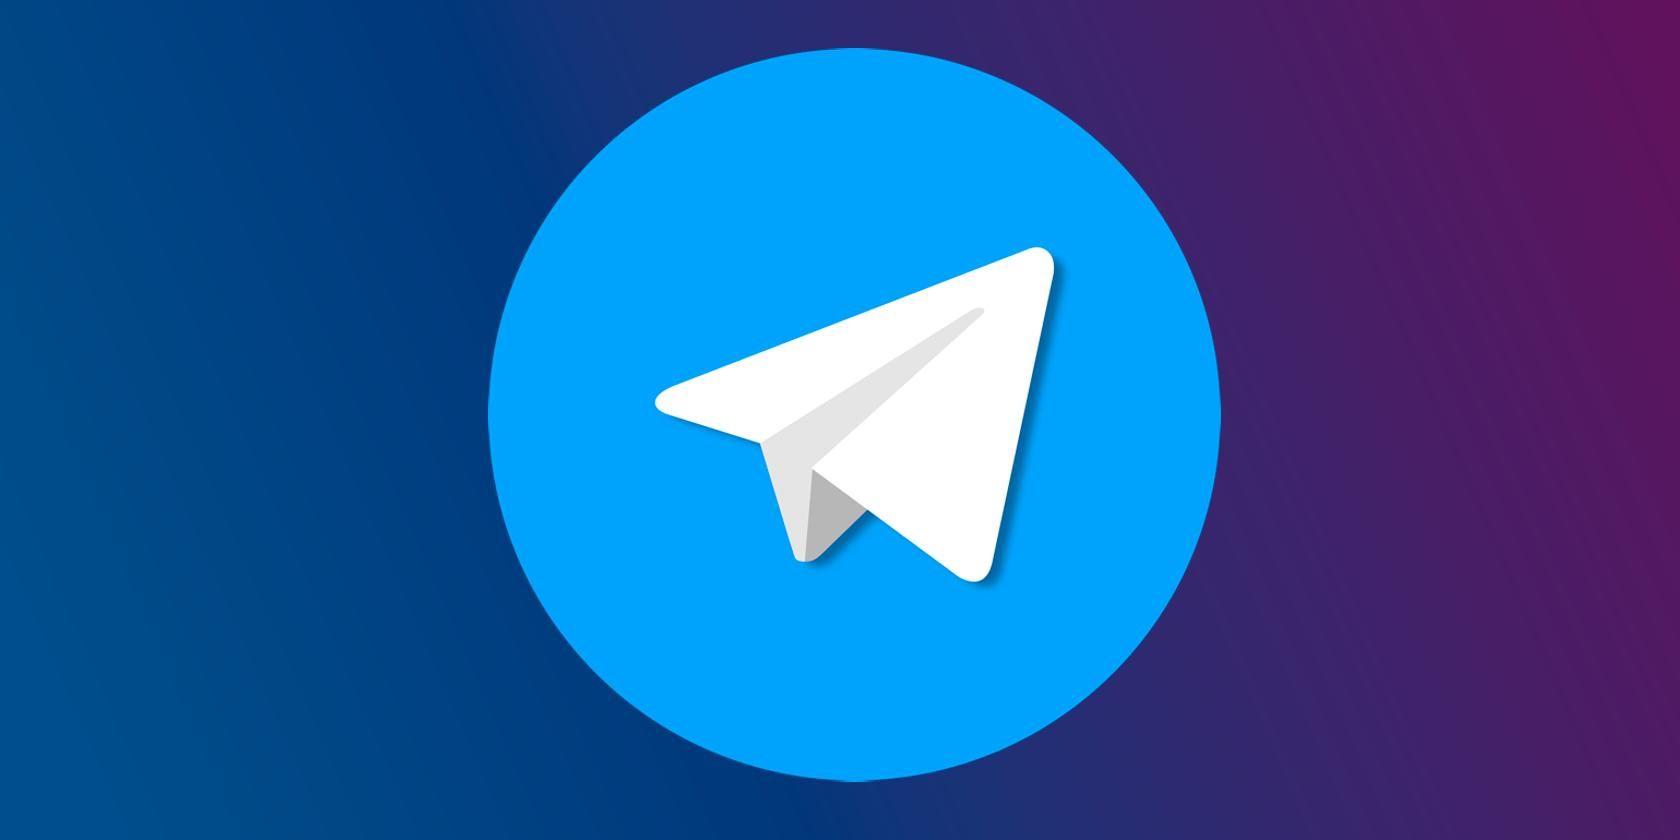 معرفی قابلیت های جدید نسخه پریمیوم تلگرام